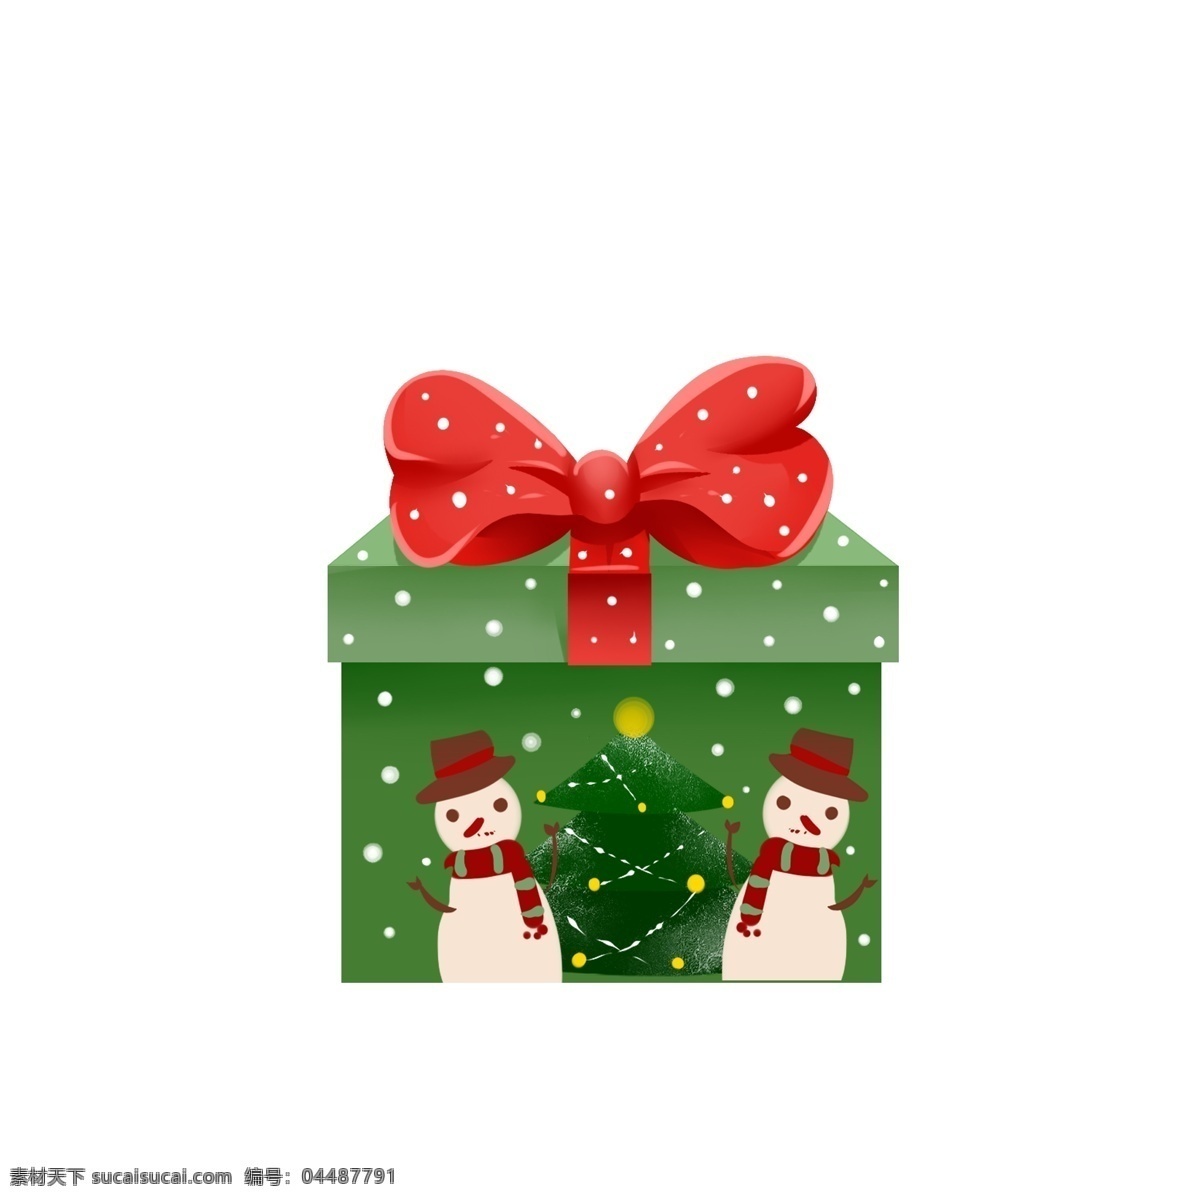 圣诞 礼物 盒 卡通 可爱 节日 圣诞节 礼物盒 平安夜 礼品 节日习俗